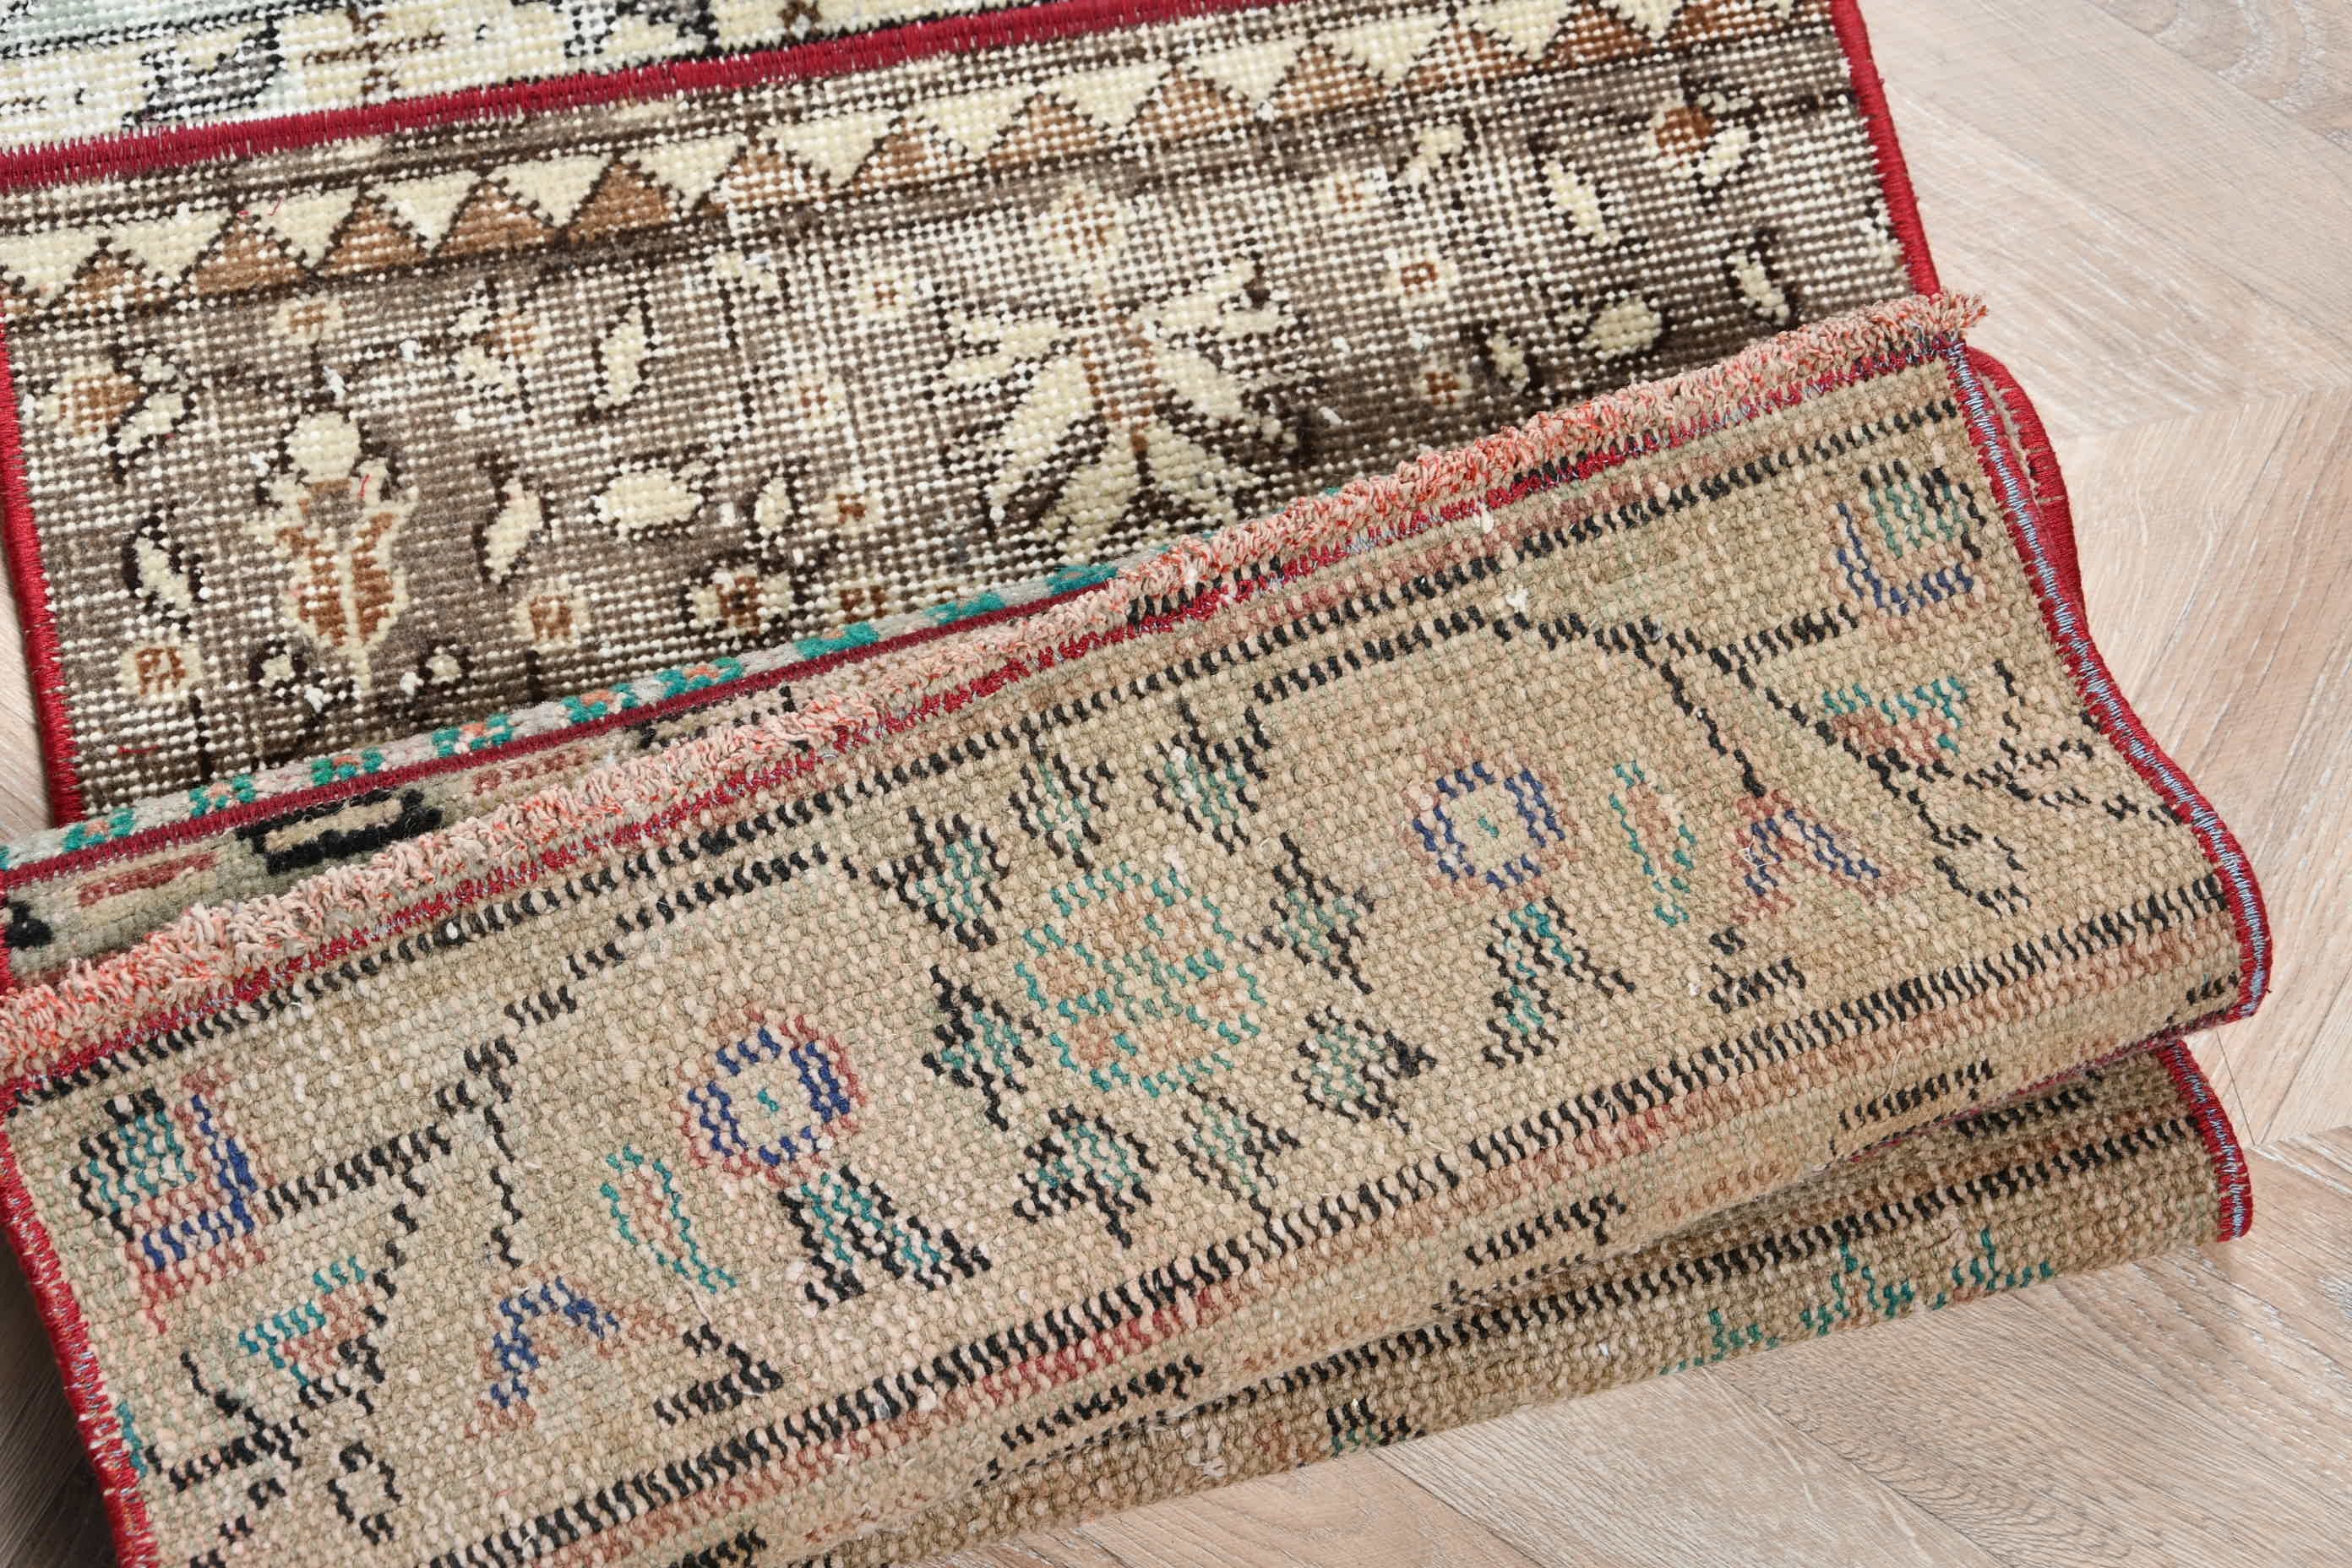 Turkish Rug, Oriental Rugs, Hallway Rug, Stair Rug, Vintage Rug, Moroccan Rug, Rugs for Hallway, Brown  1.6x5.7 ft Runner Rug